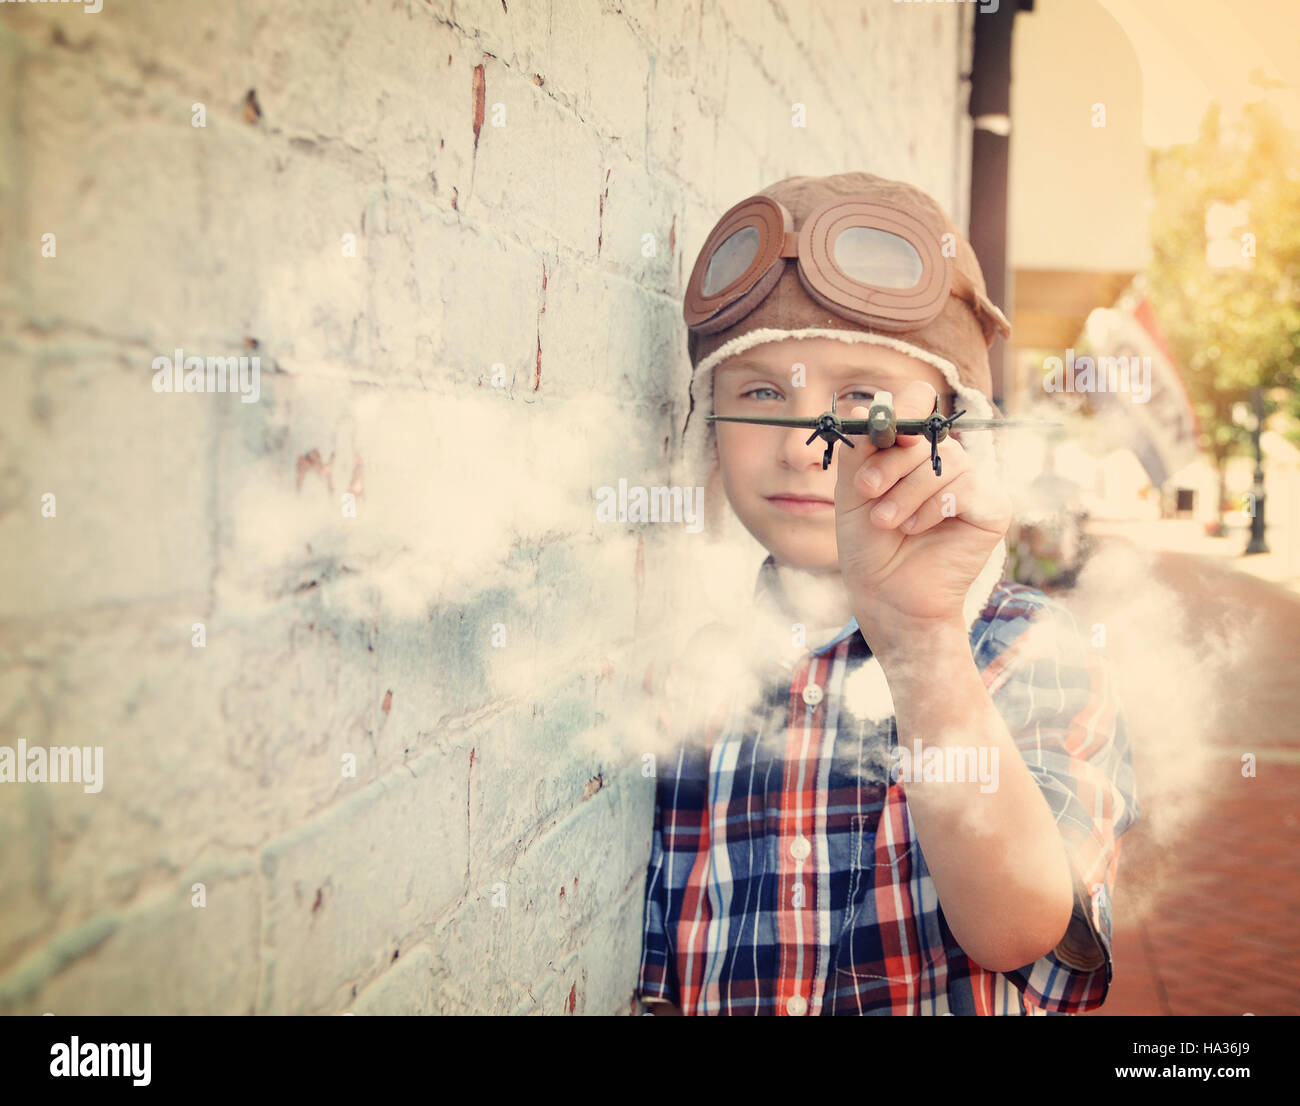 Un jeune garçon fait semblant d'être un pilote et jouant avec un avion jouet contre un mur de briques pour un rêve ou notion de carrière. Banque D'Images